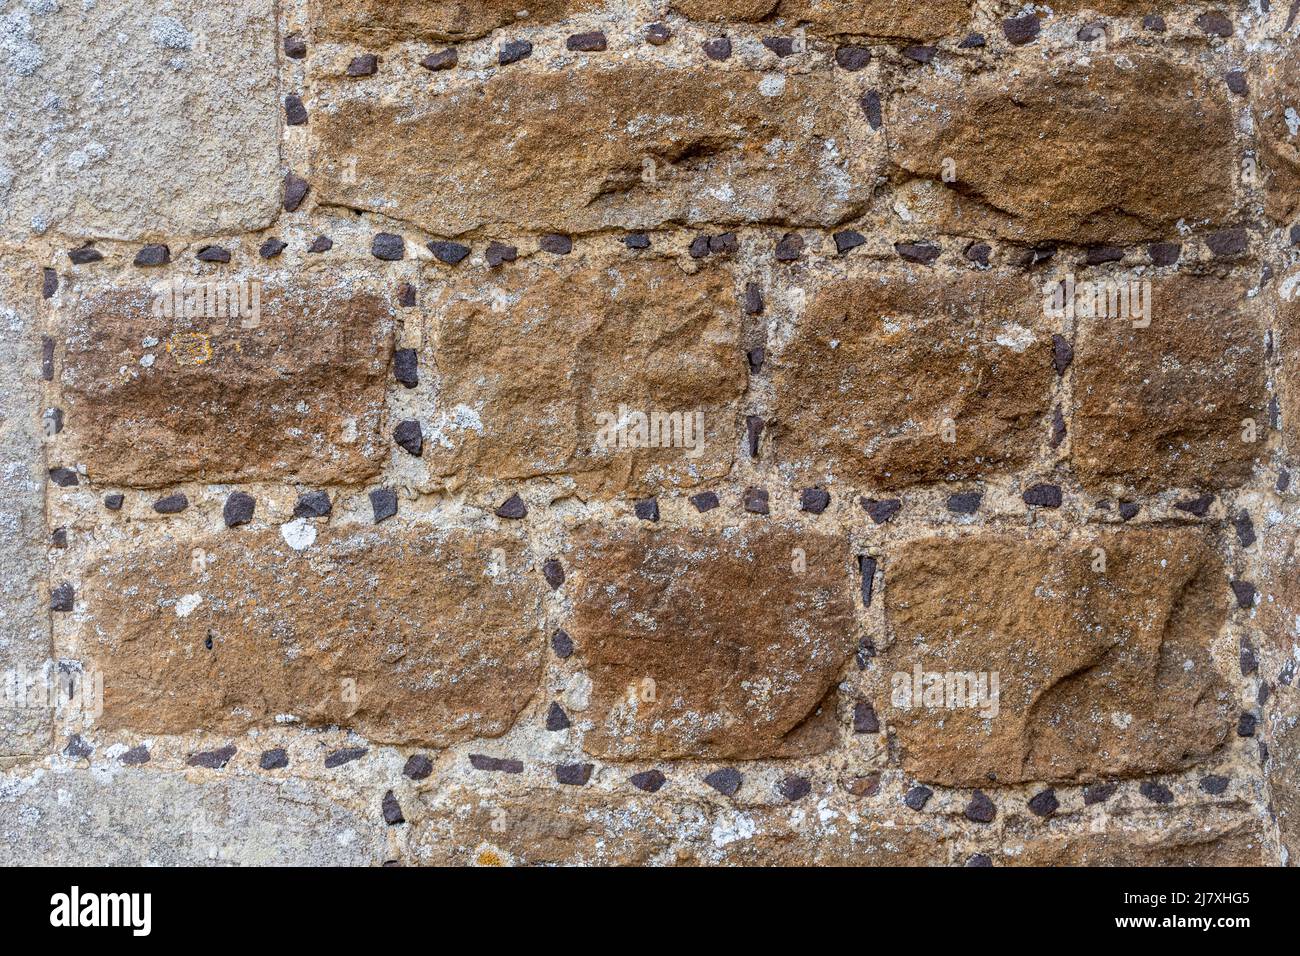 Mur montrant le galement (également appelé garretage ou greneting), une technique architecturale où de petits morceaux de pierre sont poussés dans le mortier humide, Royaume-Uni Banque D'Images